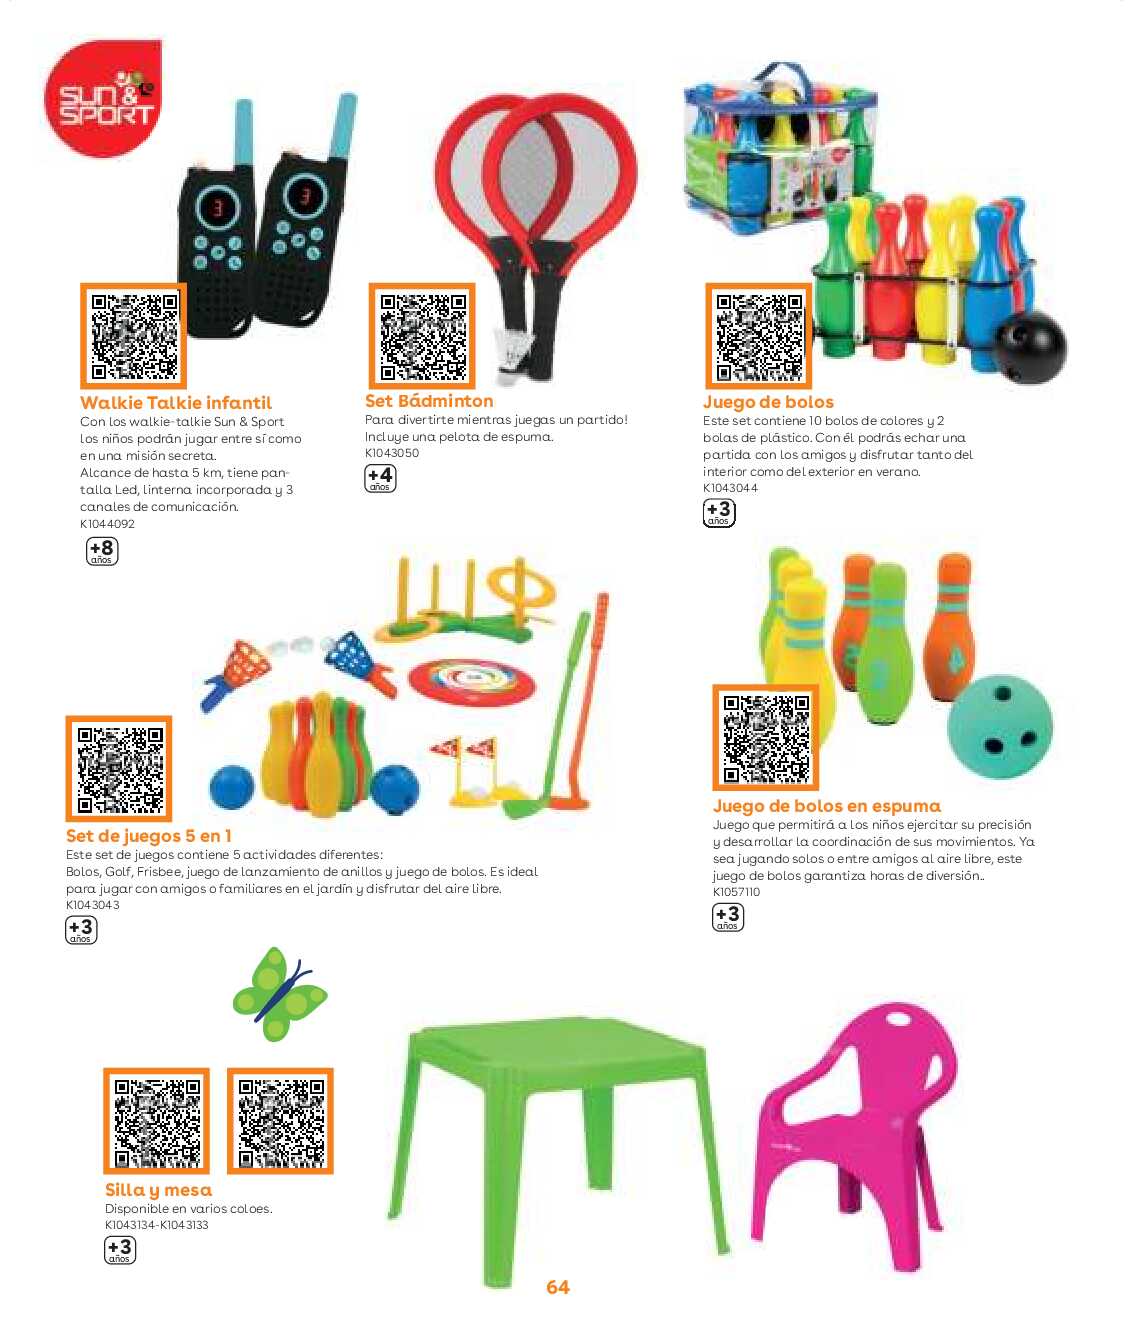 Guía aire libre Toys R Us. Página 64